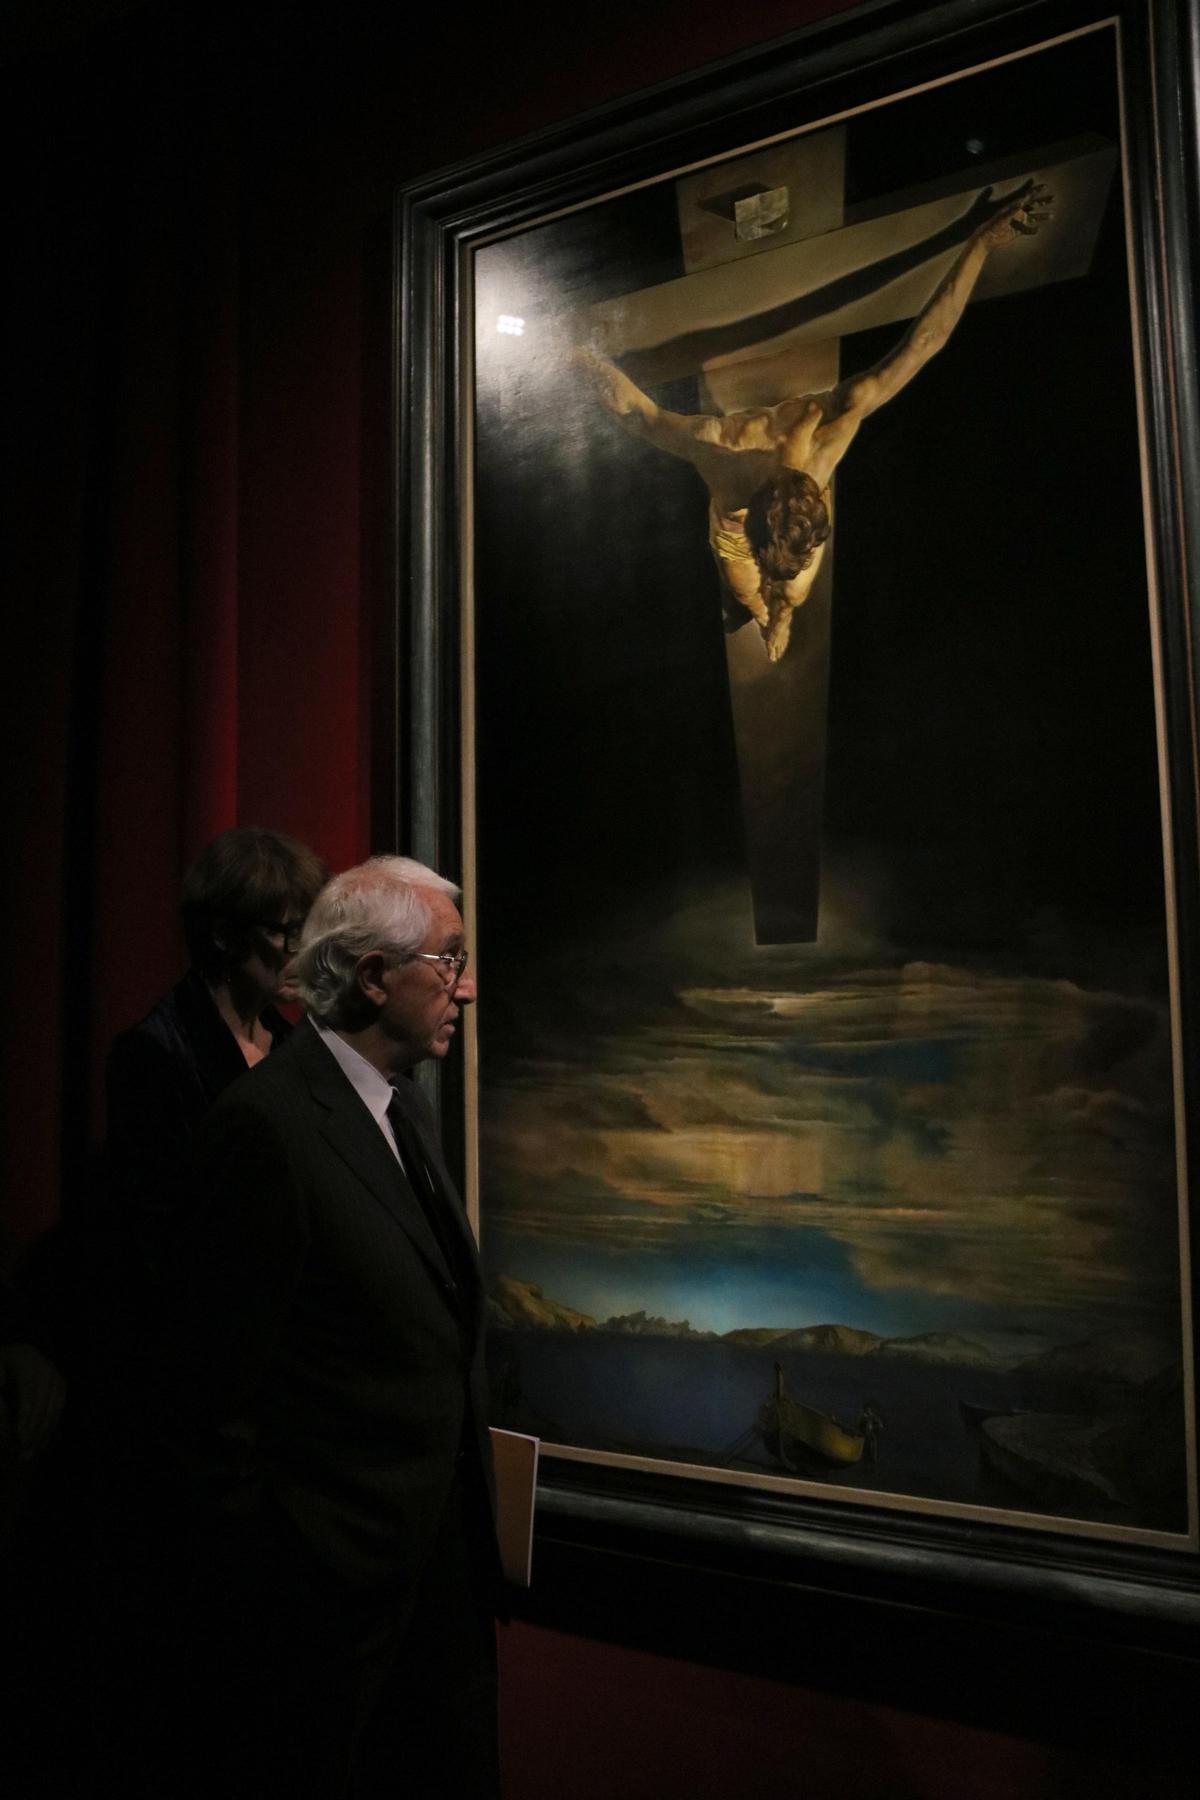 El Cristo de Dalí se expone temporalmente en el Teatre-Museu de Figueres